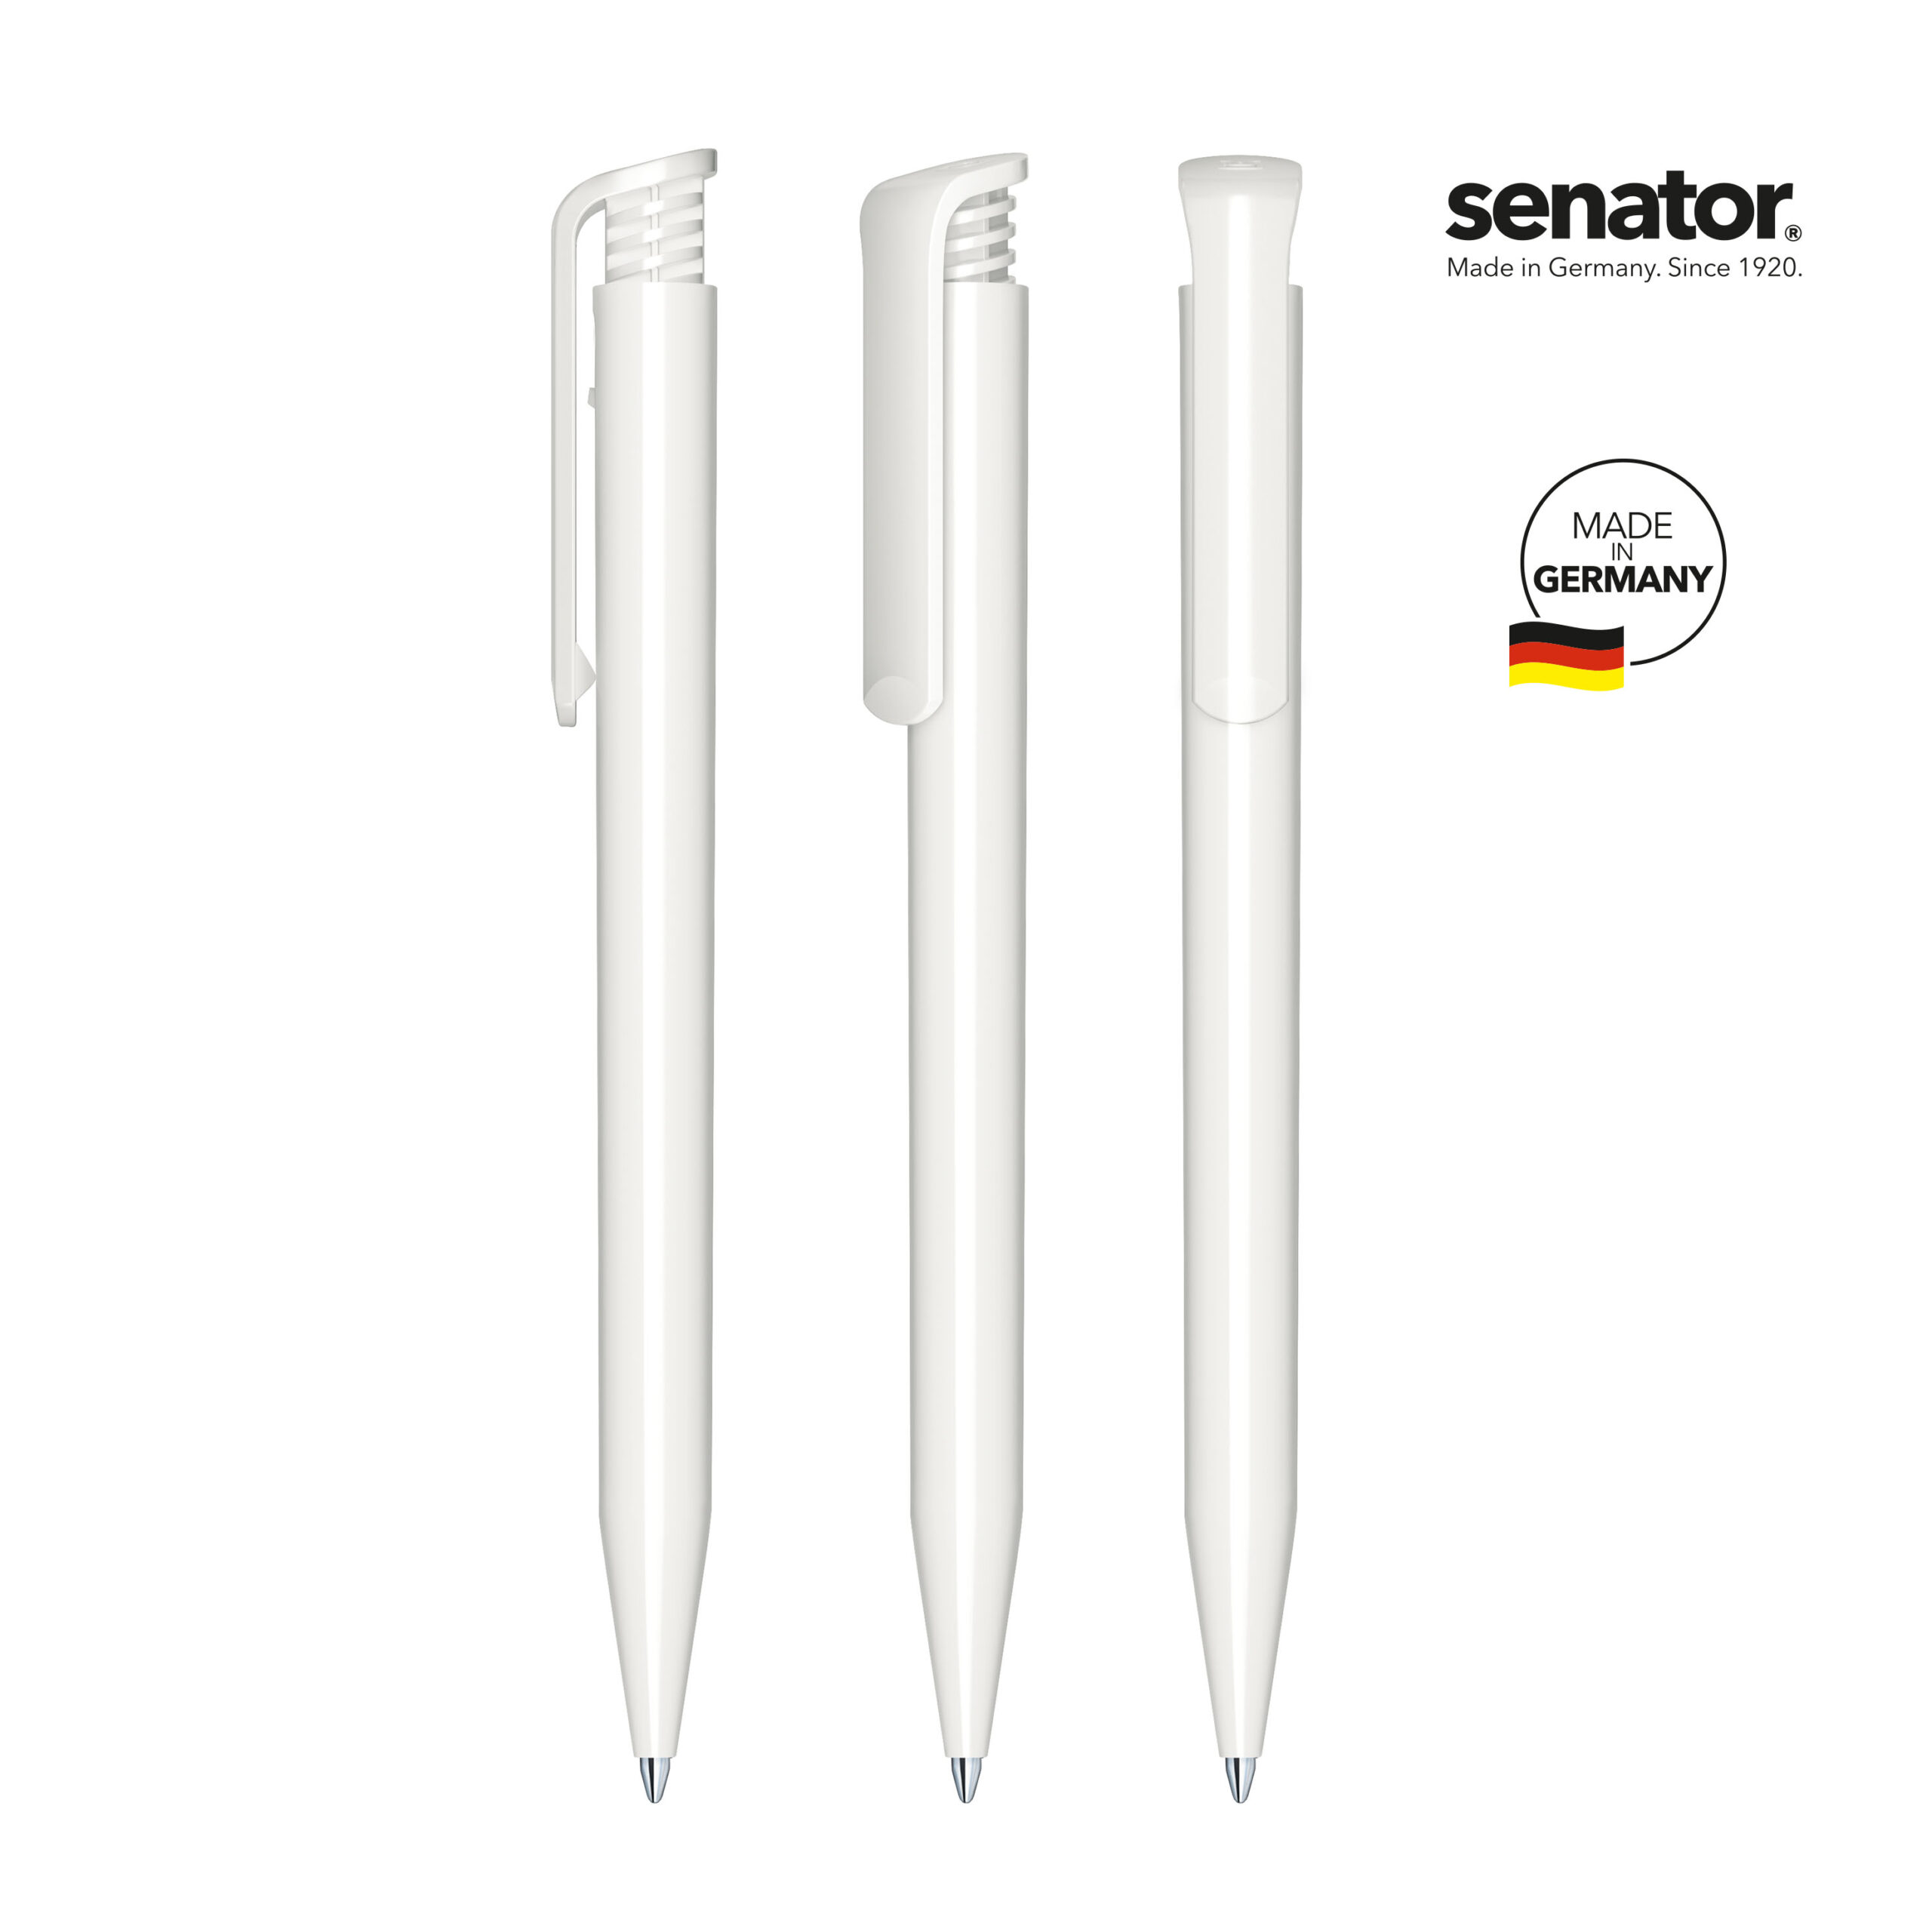 2883-senator-super-hit-polished-white-5-p